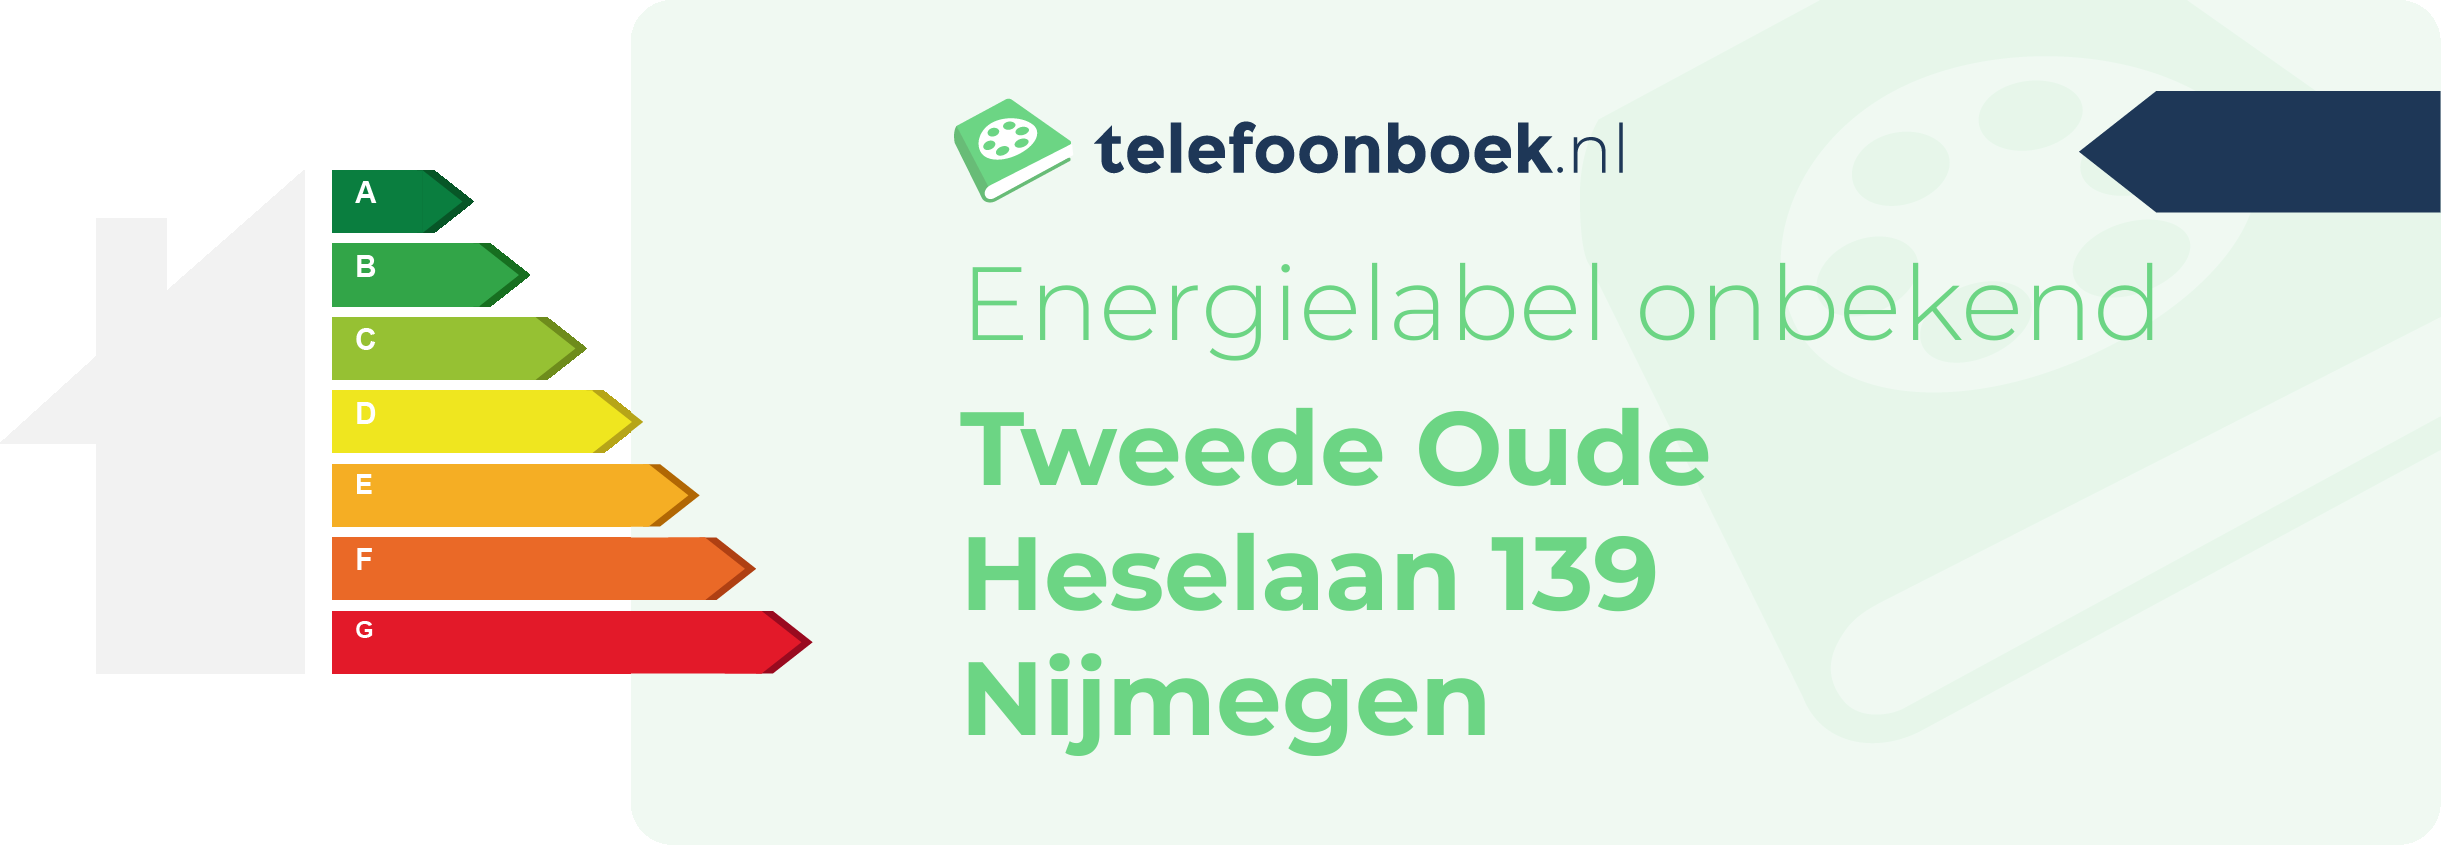 Energielabel Tweede Oude Heselaan 139 Nijmegen